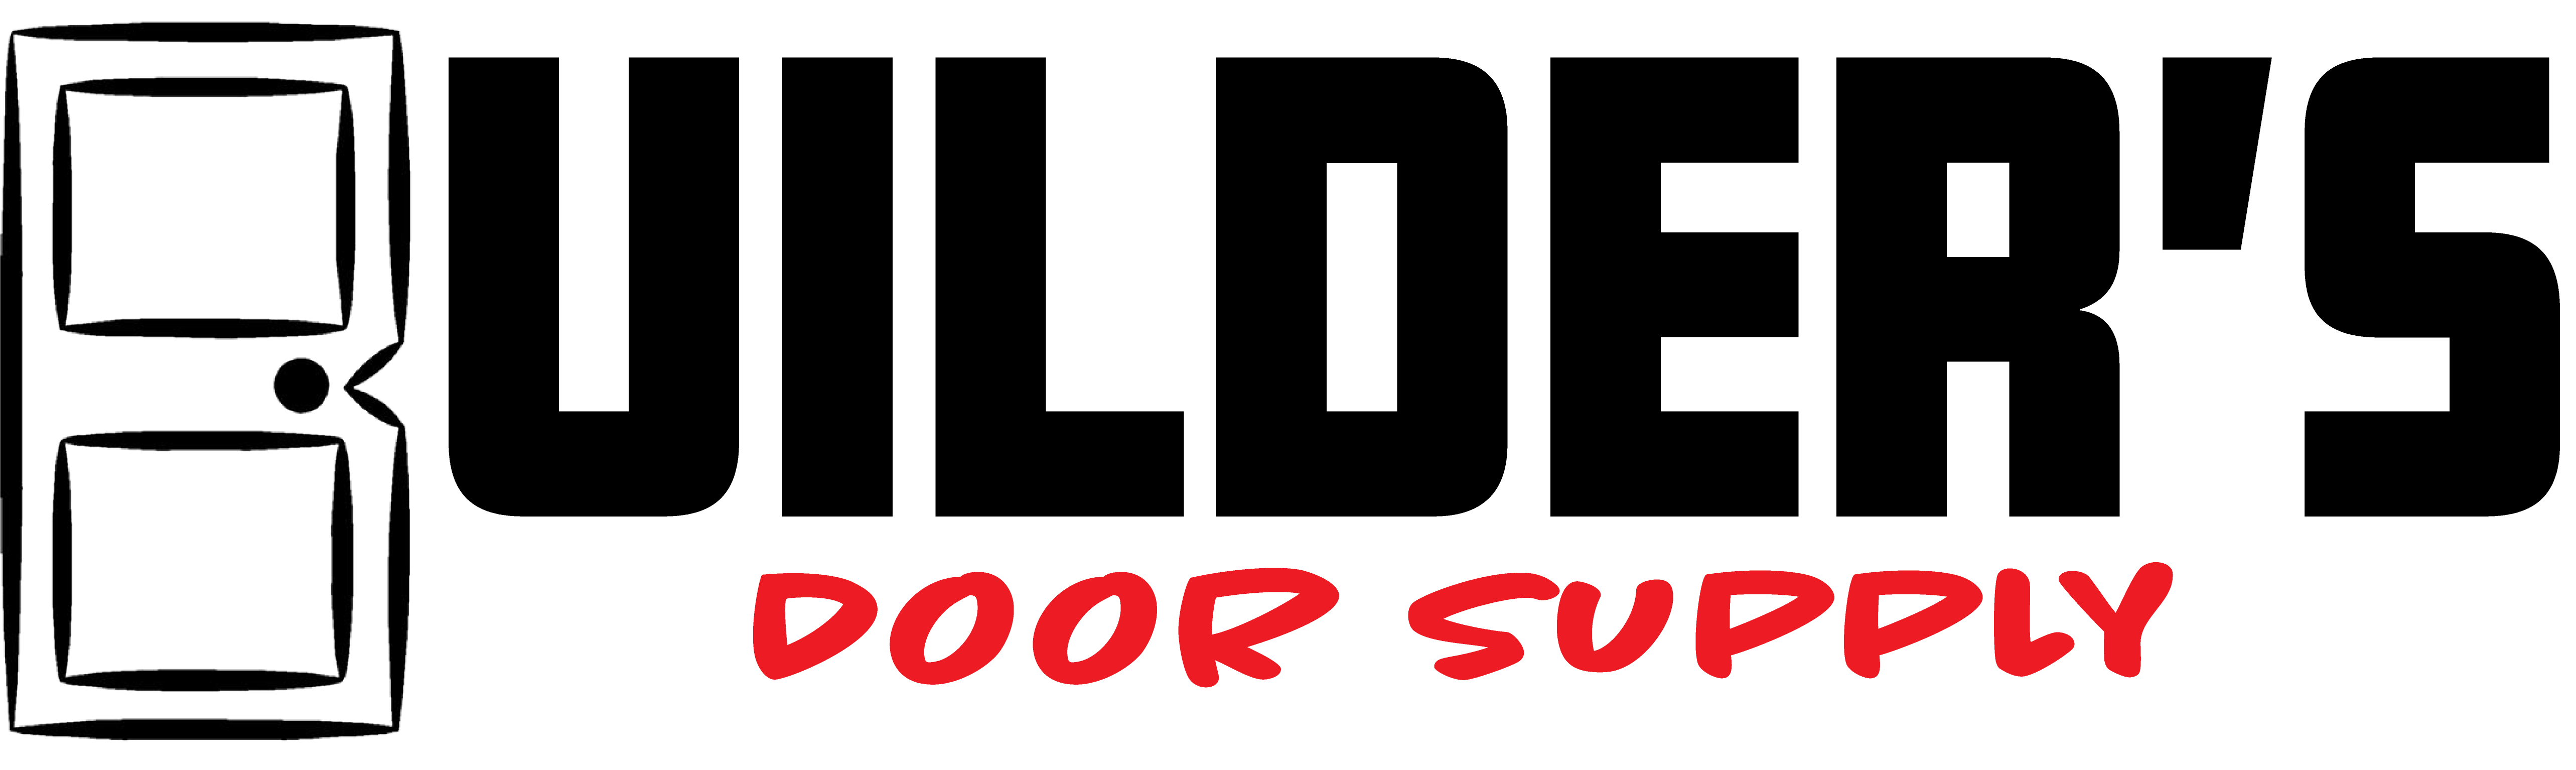 Builder's Door Supply Inc. logo